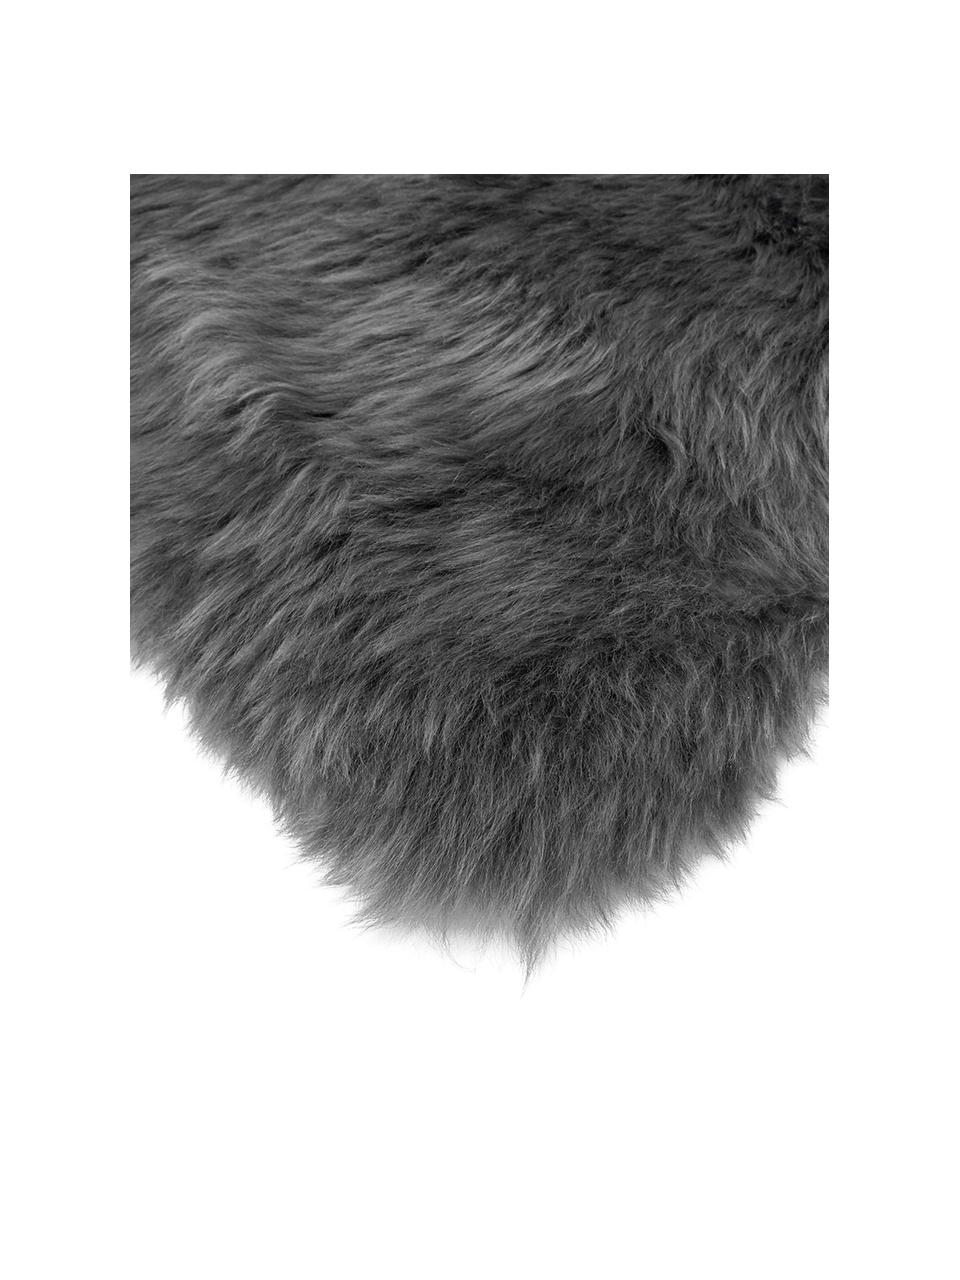 Skóra owcza Oslo, proste włosie, Antracytowy, S 60 x D 90 cm